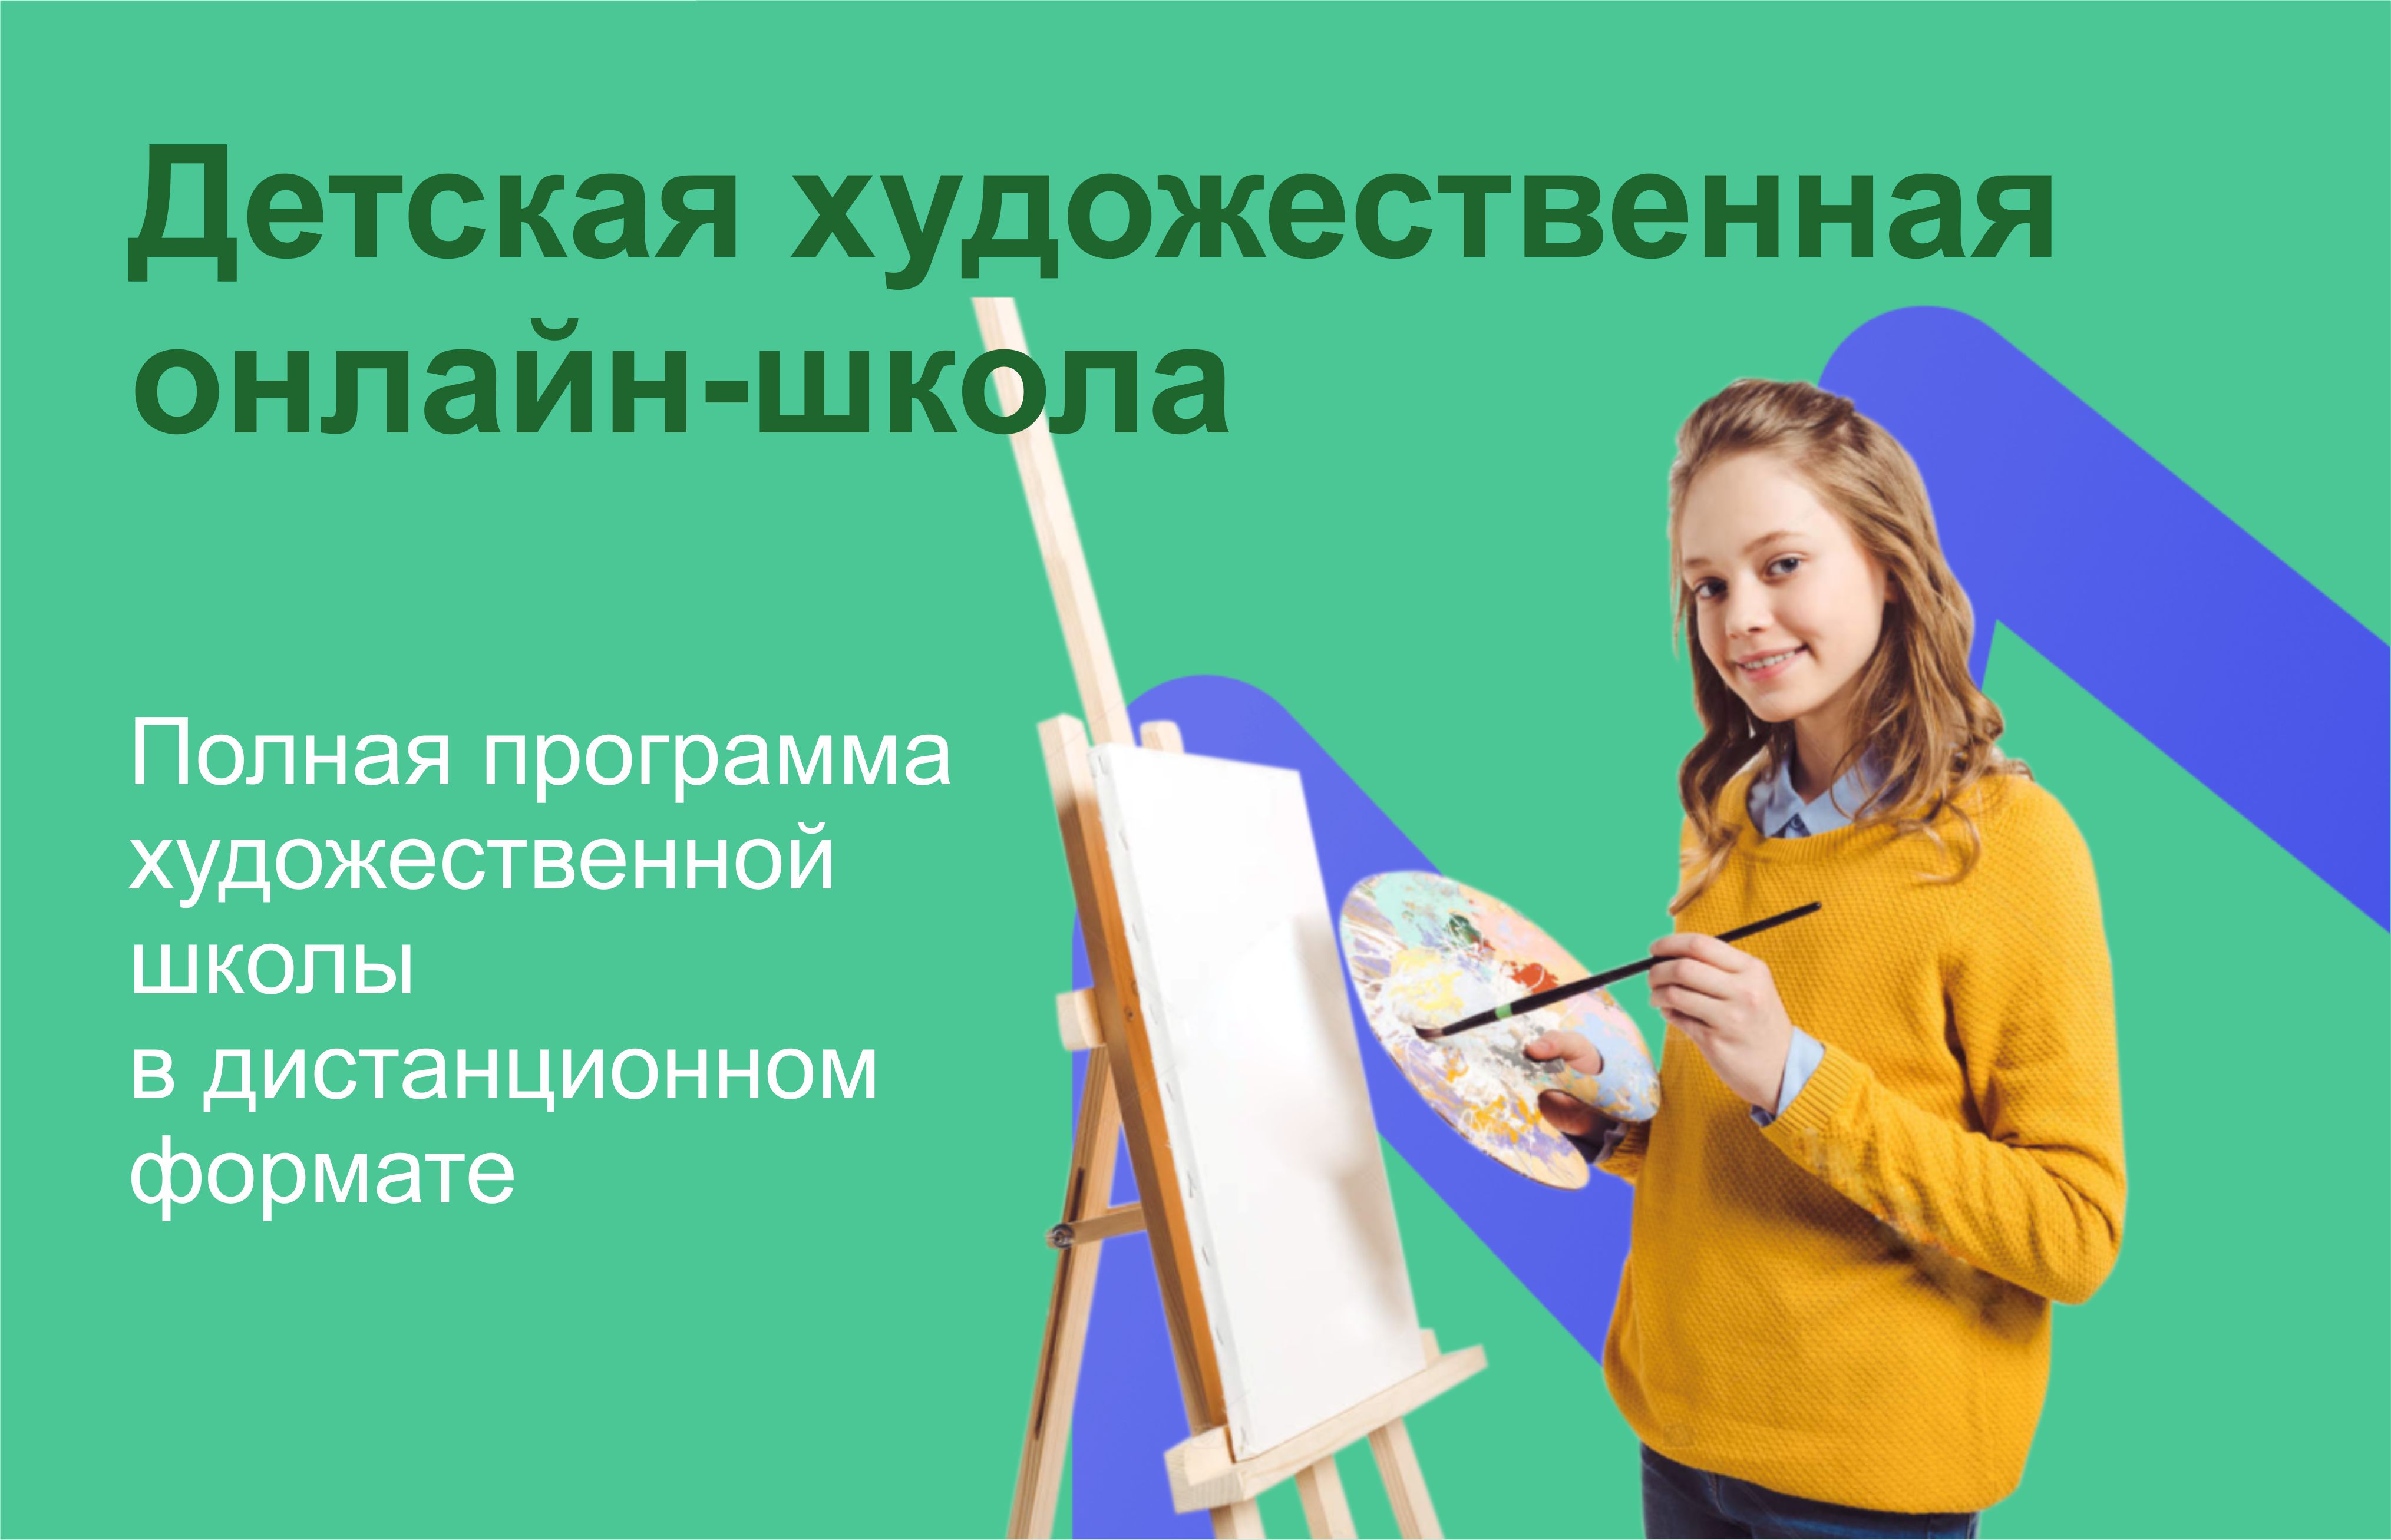 Детская художес­твенная онлайн-школа